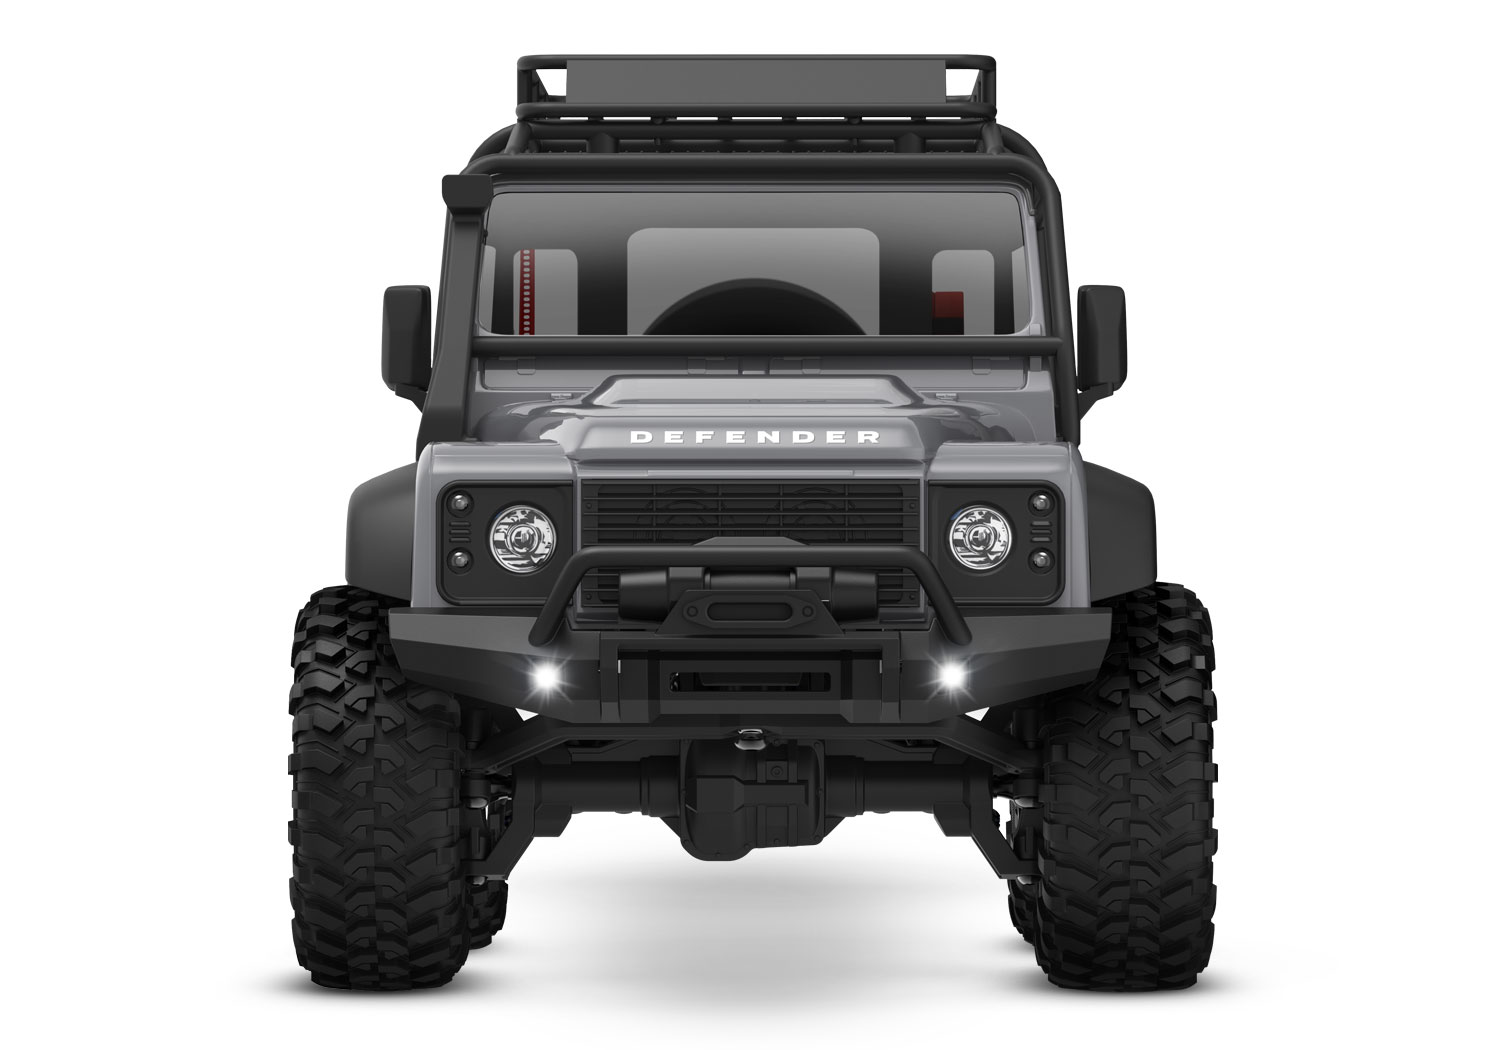 Kayhobbies - Onlineshop für RC Cars - Drift - Crawler - Motorhaube  Lufteinlass Dekoration für 1/18 TRX-4M Land Rover Defender